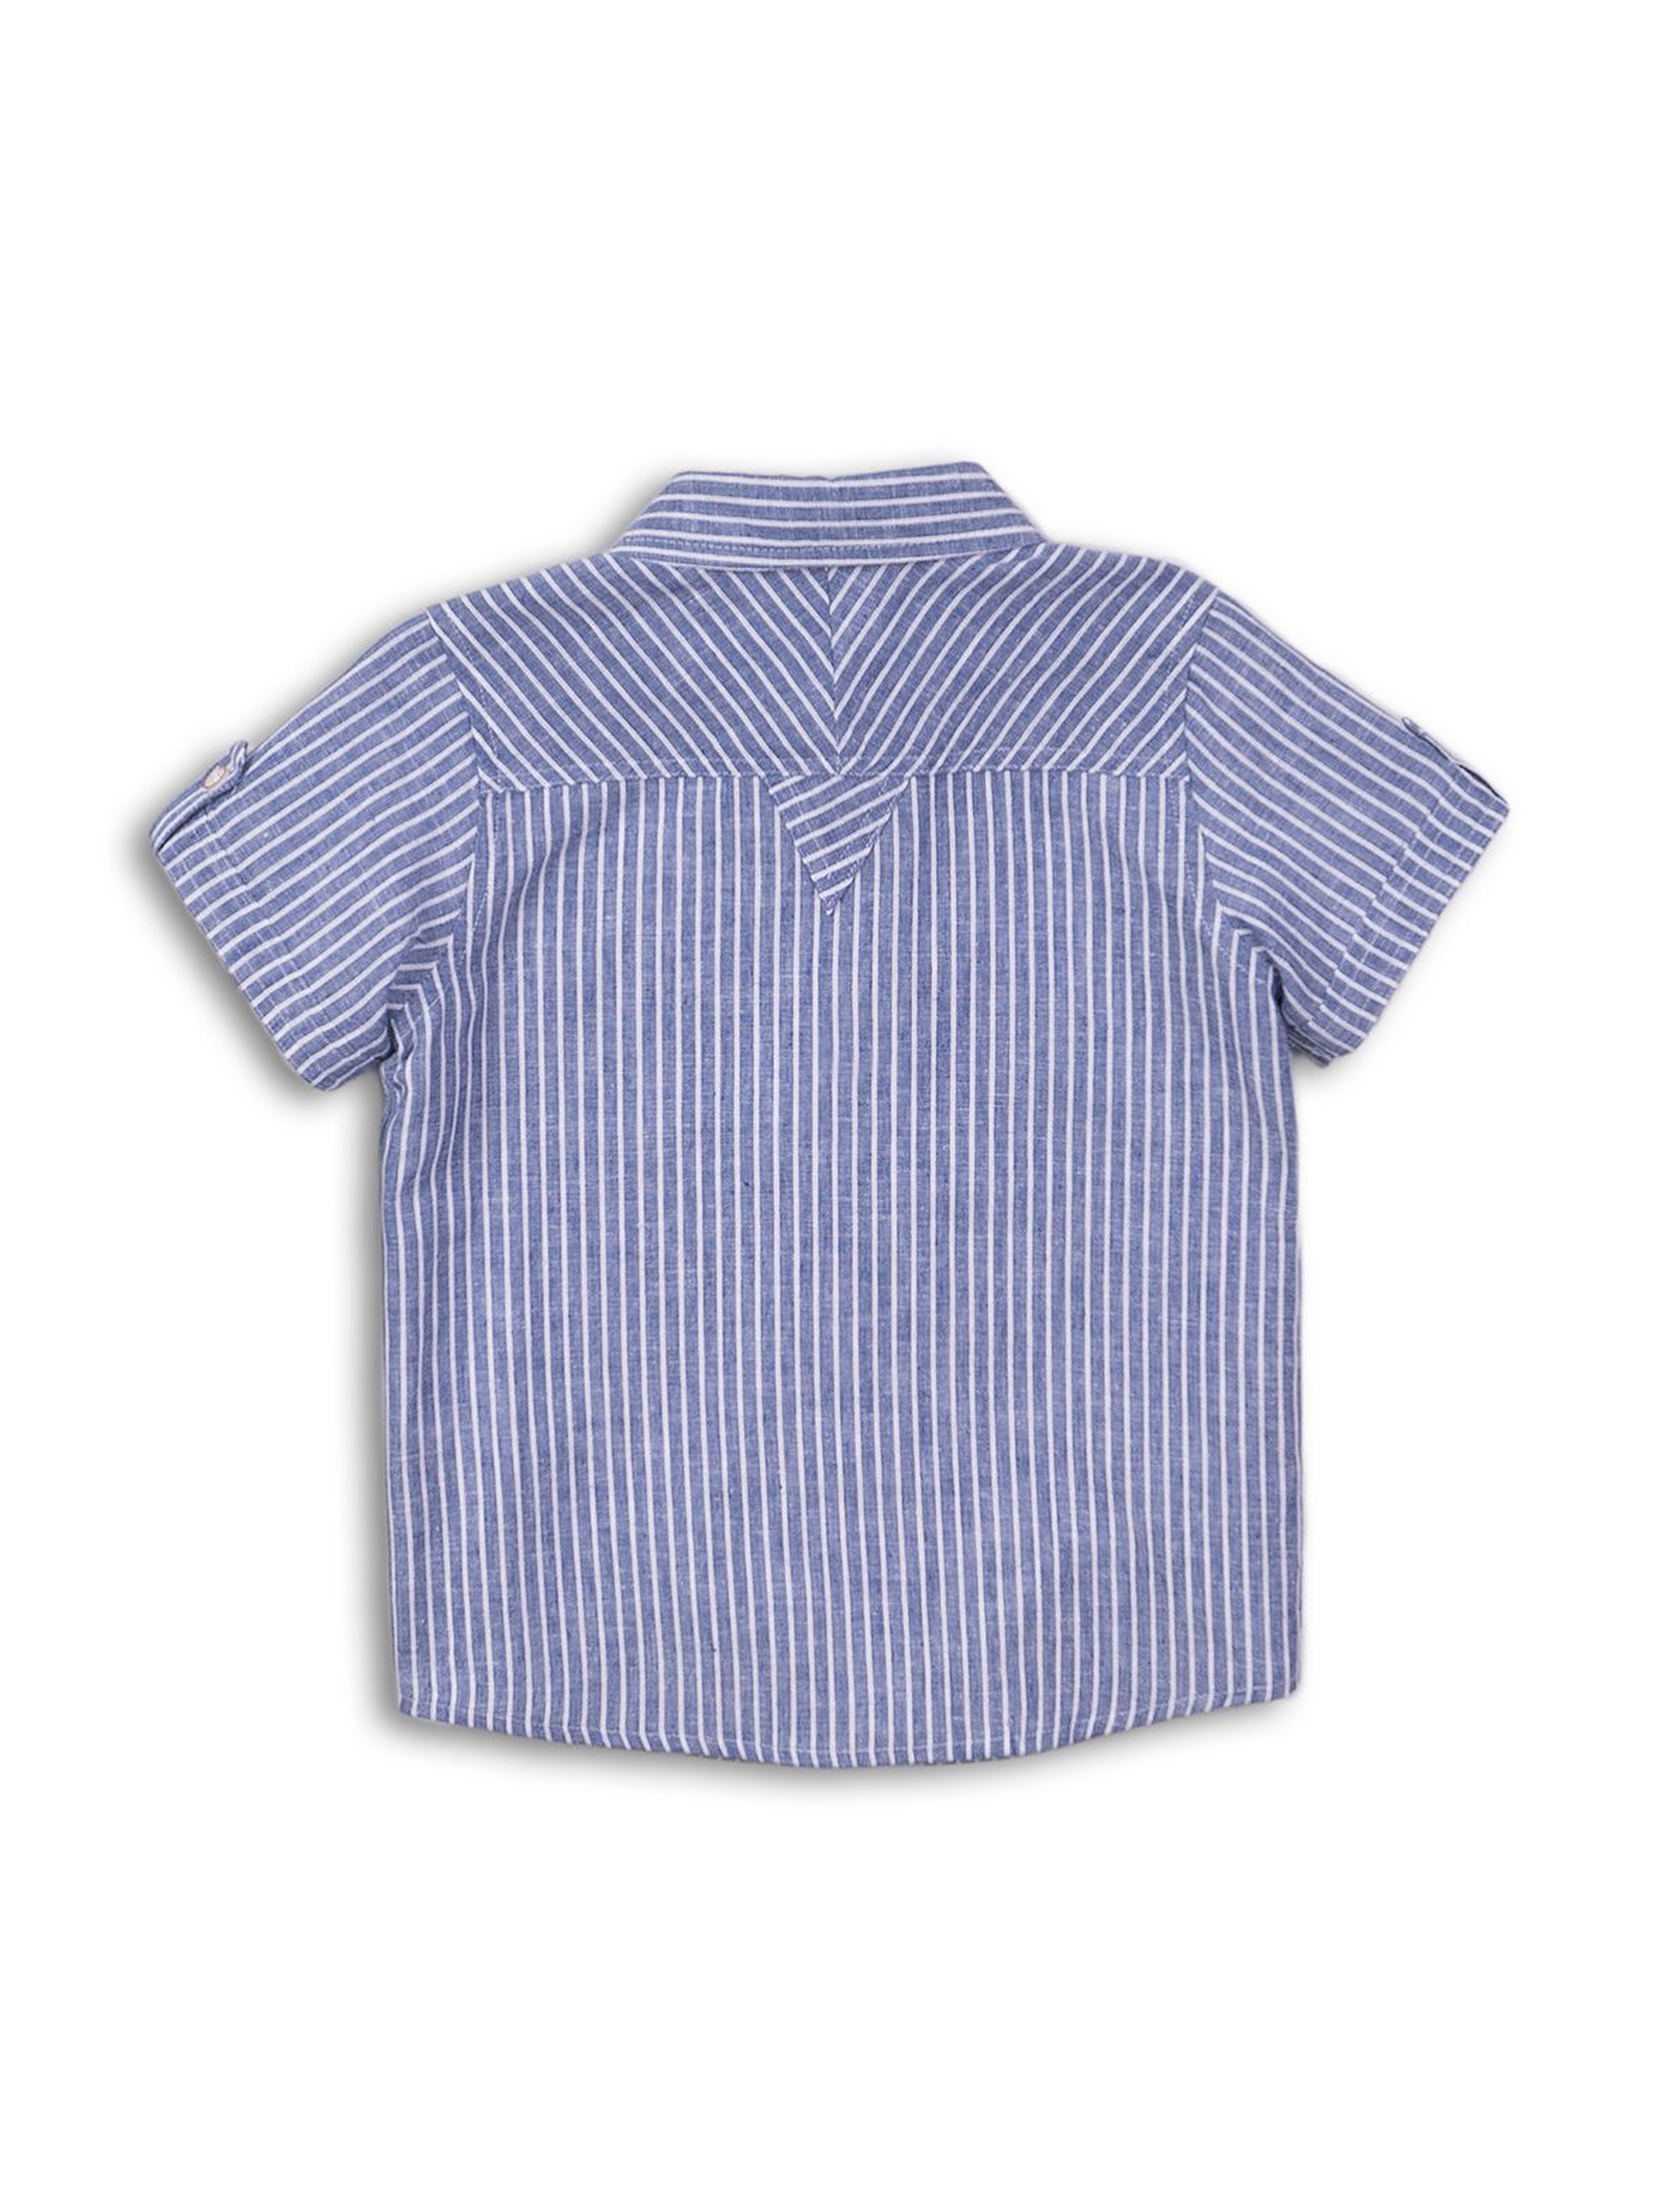 Koszula chłopięca z krótkim rękawem - niebieska w paski